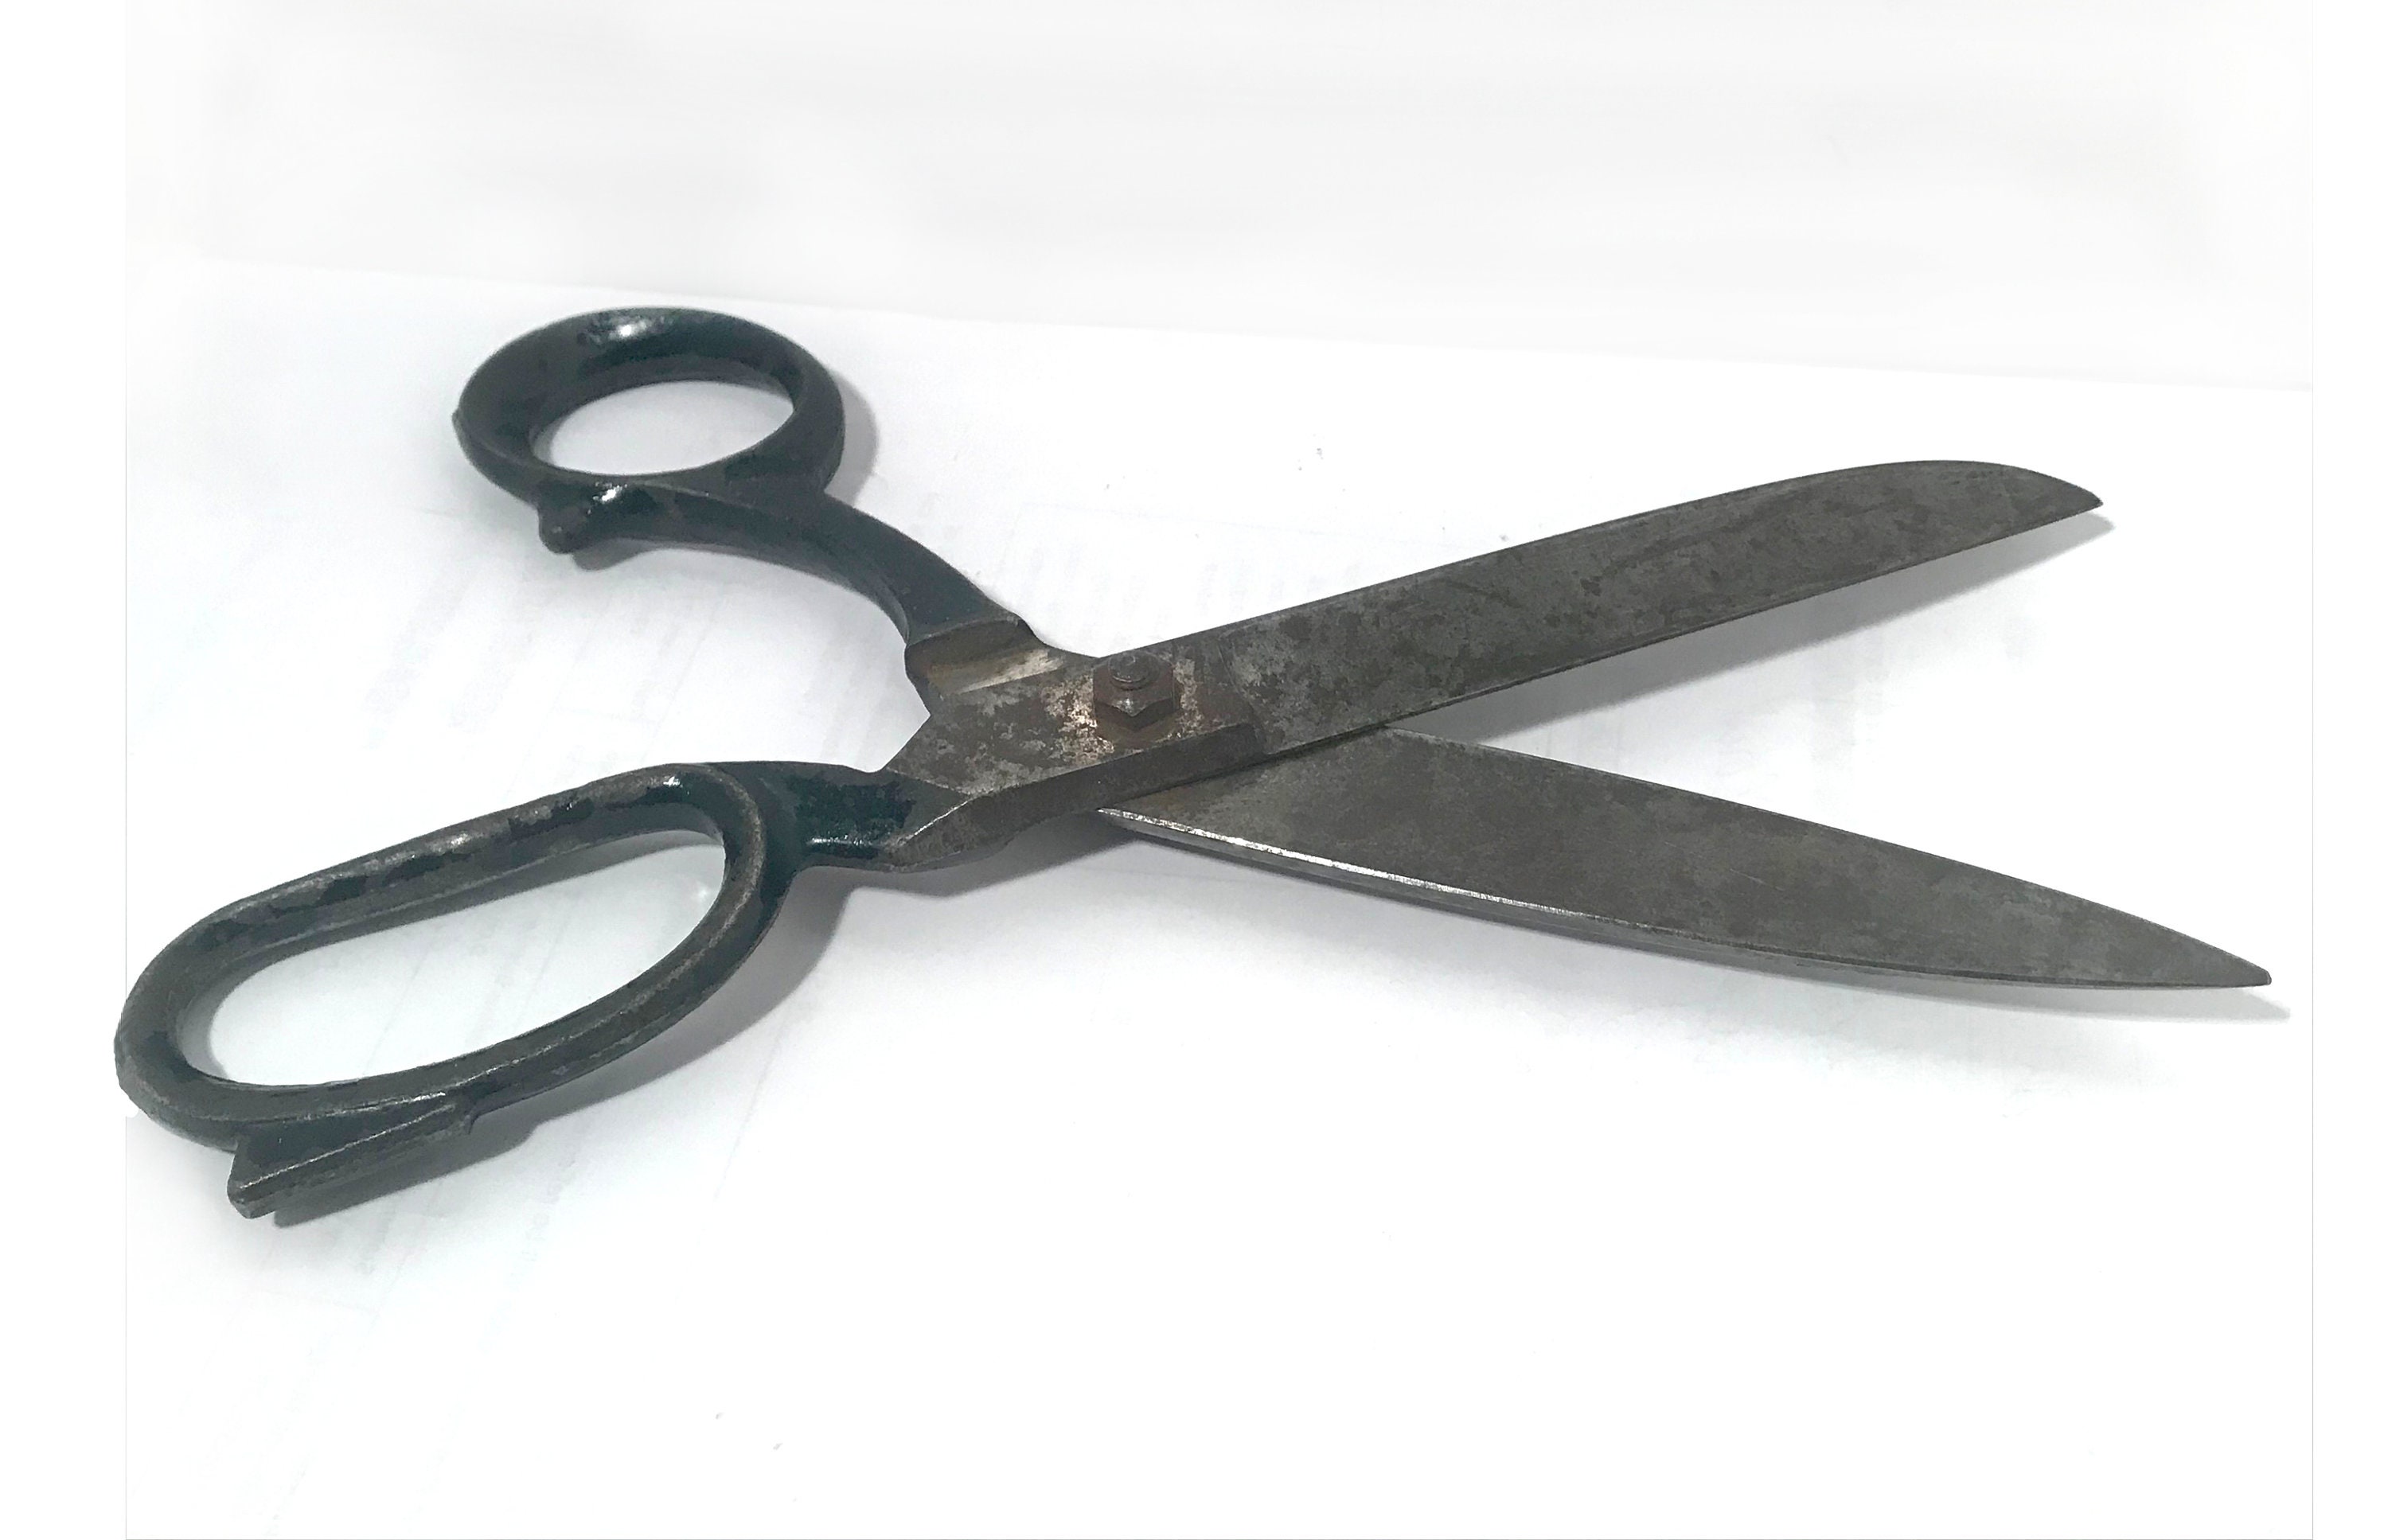 Vintage Solingen Germany Desk Scissors